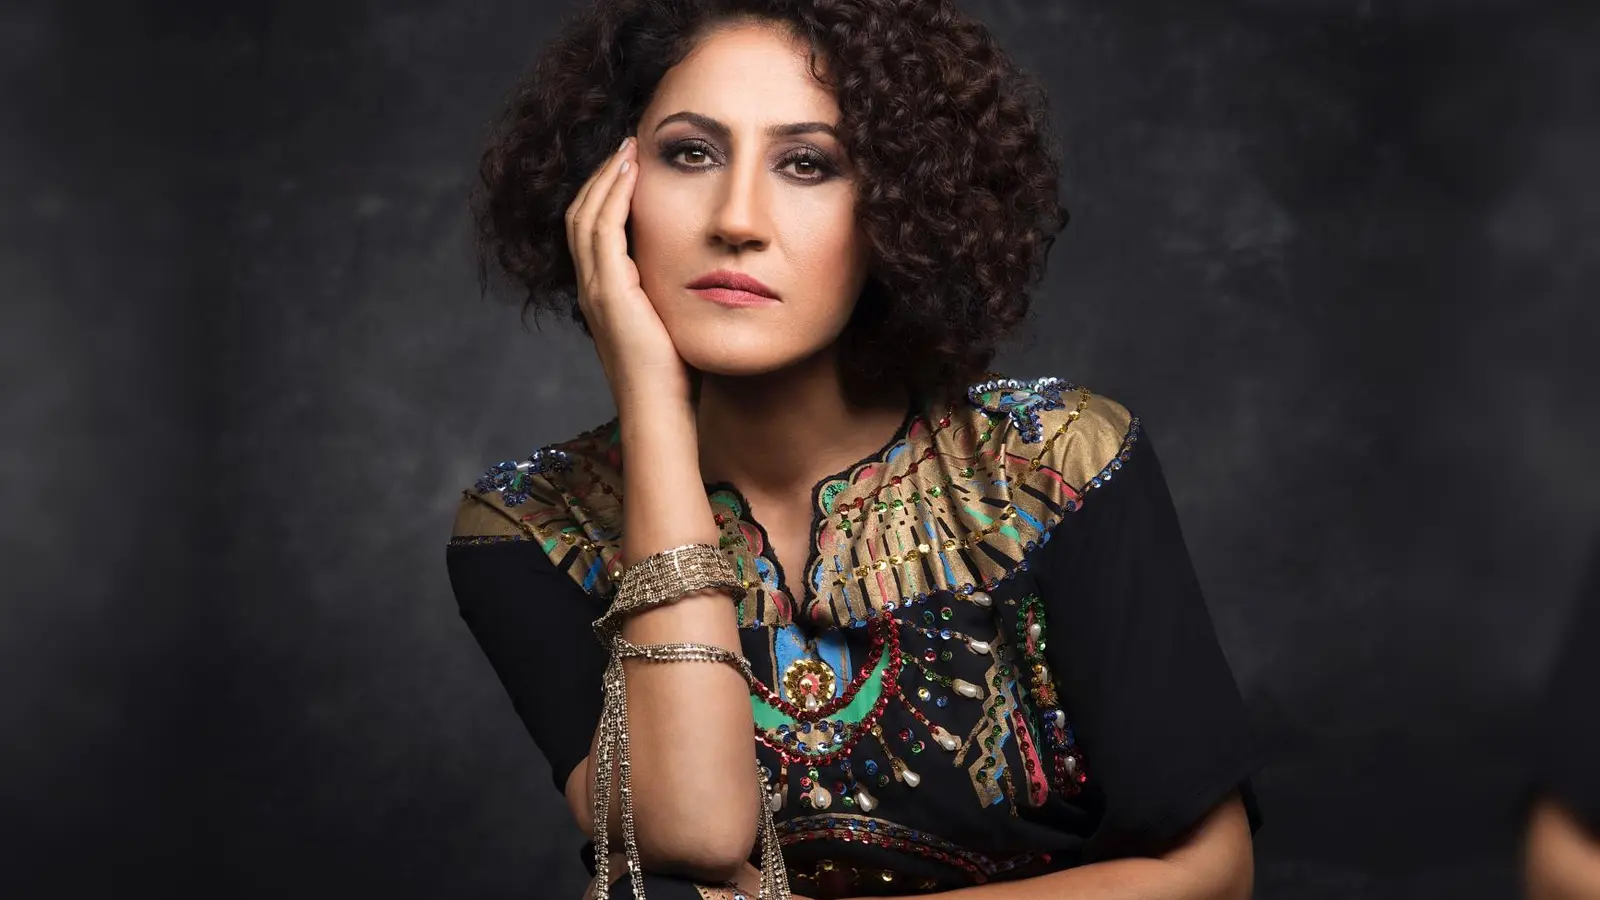 Die kurdische Sängerin Aynur tritt gemeinsam mit den Augsburger Philharmonikern auf der Freilichtbühne auf. (Foto: Mushin Akgün)